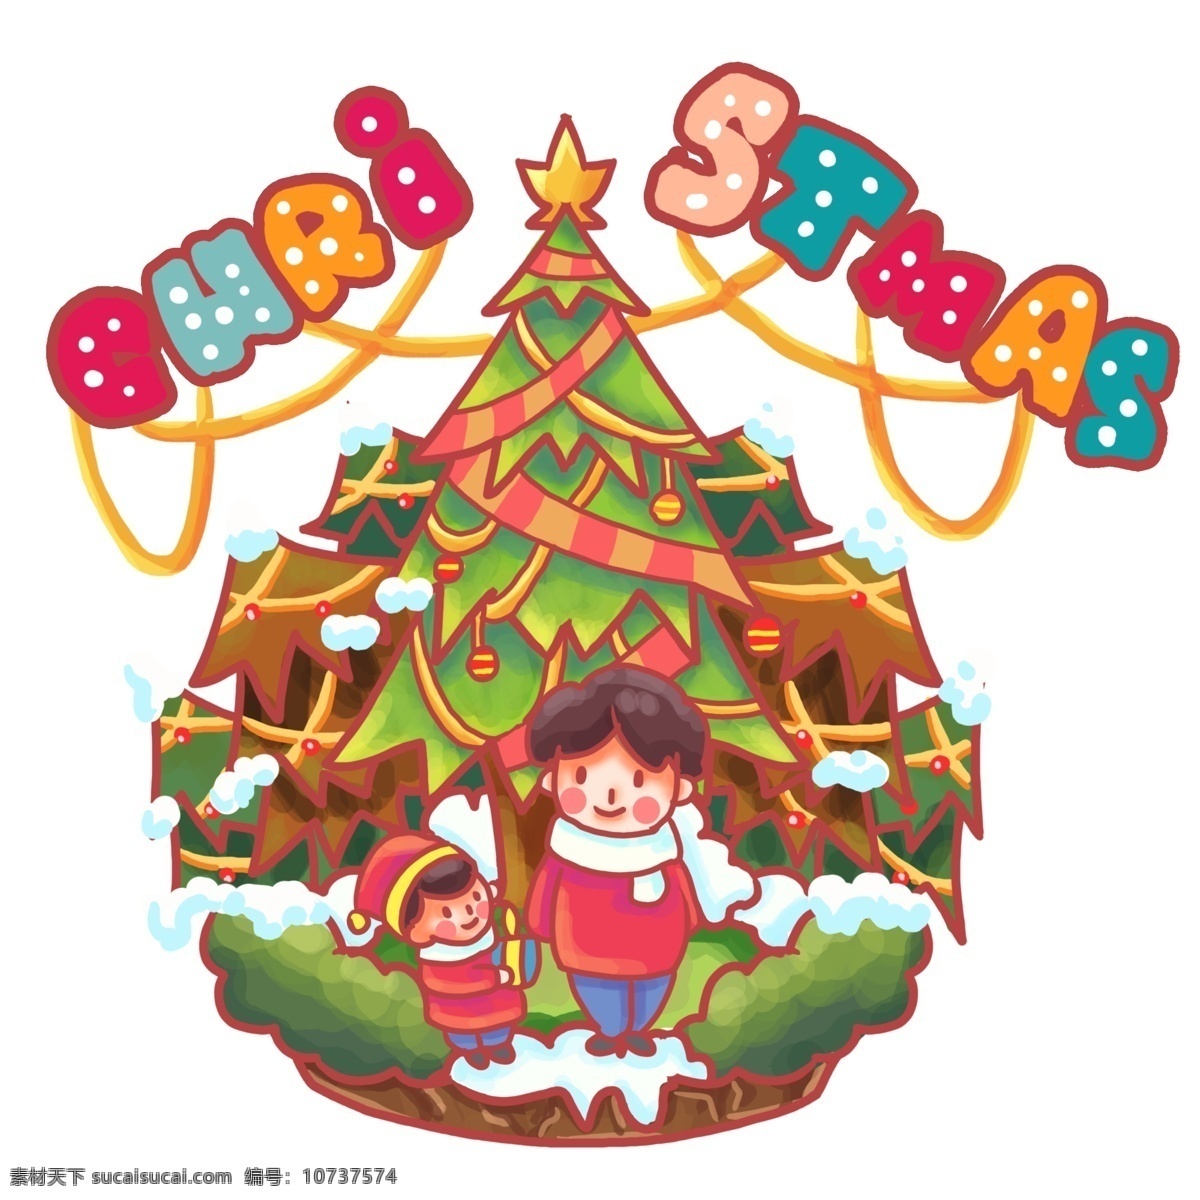 圣诞 节日 快乐 过节 父子 礼物 树林 雪堆 卡通 可爱 萌 圣诞节 平安夜 下雪 圣诞树 12月25日 耶稣 开心 假期 假日 杉树